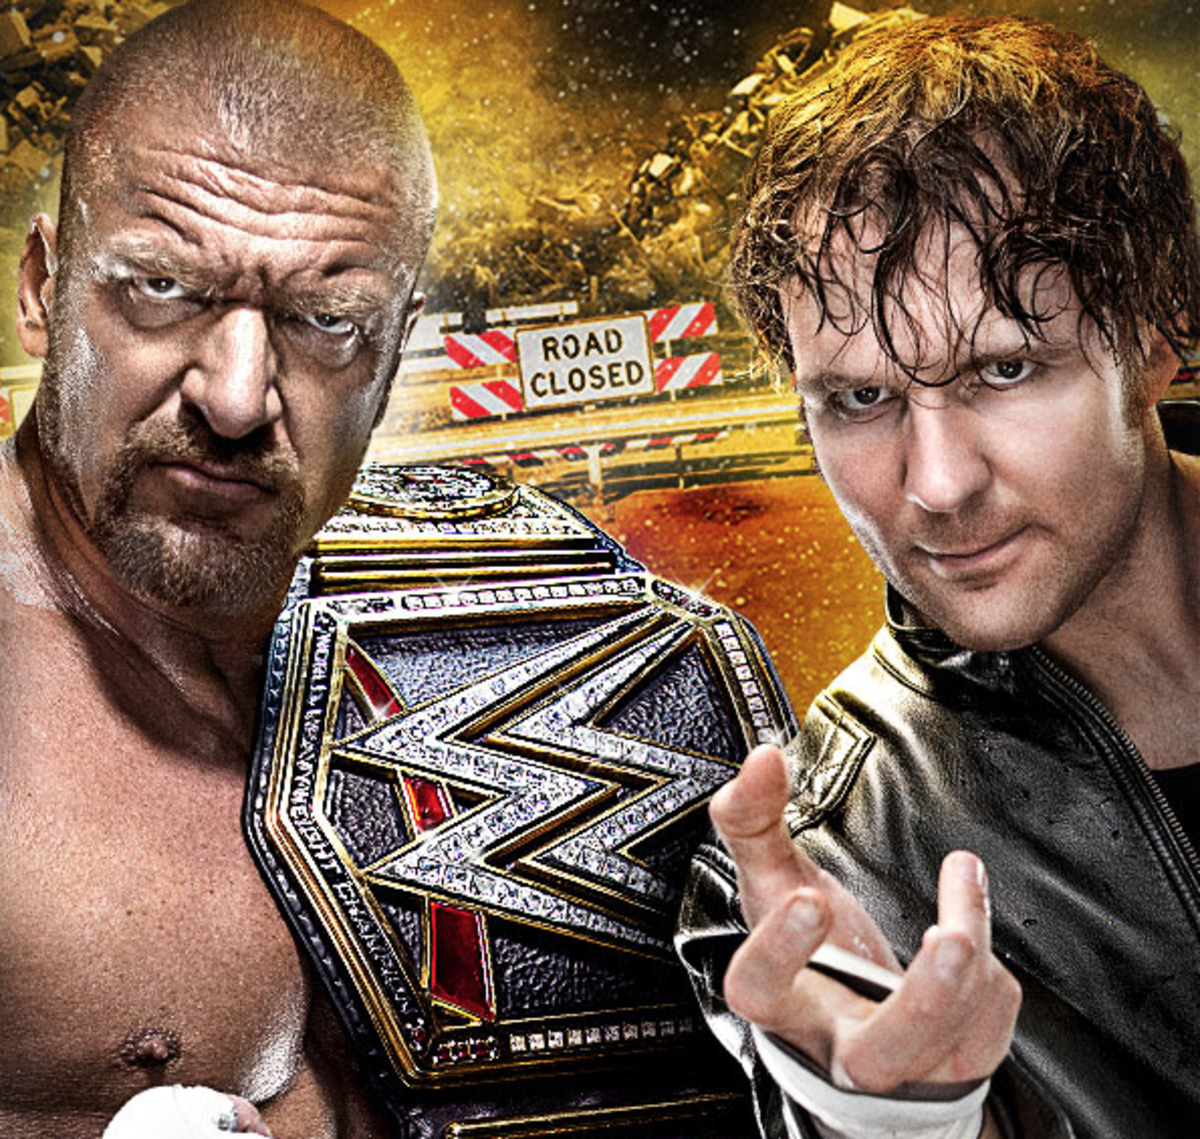 Triple H vs. Dean Ambrose